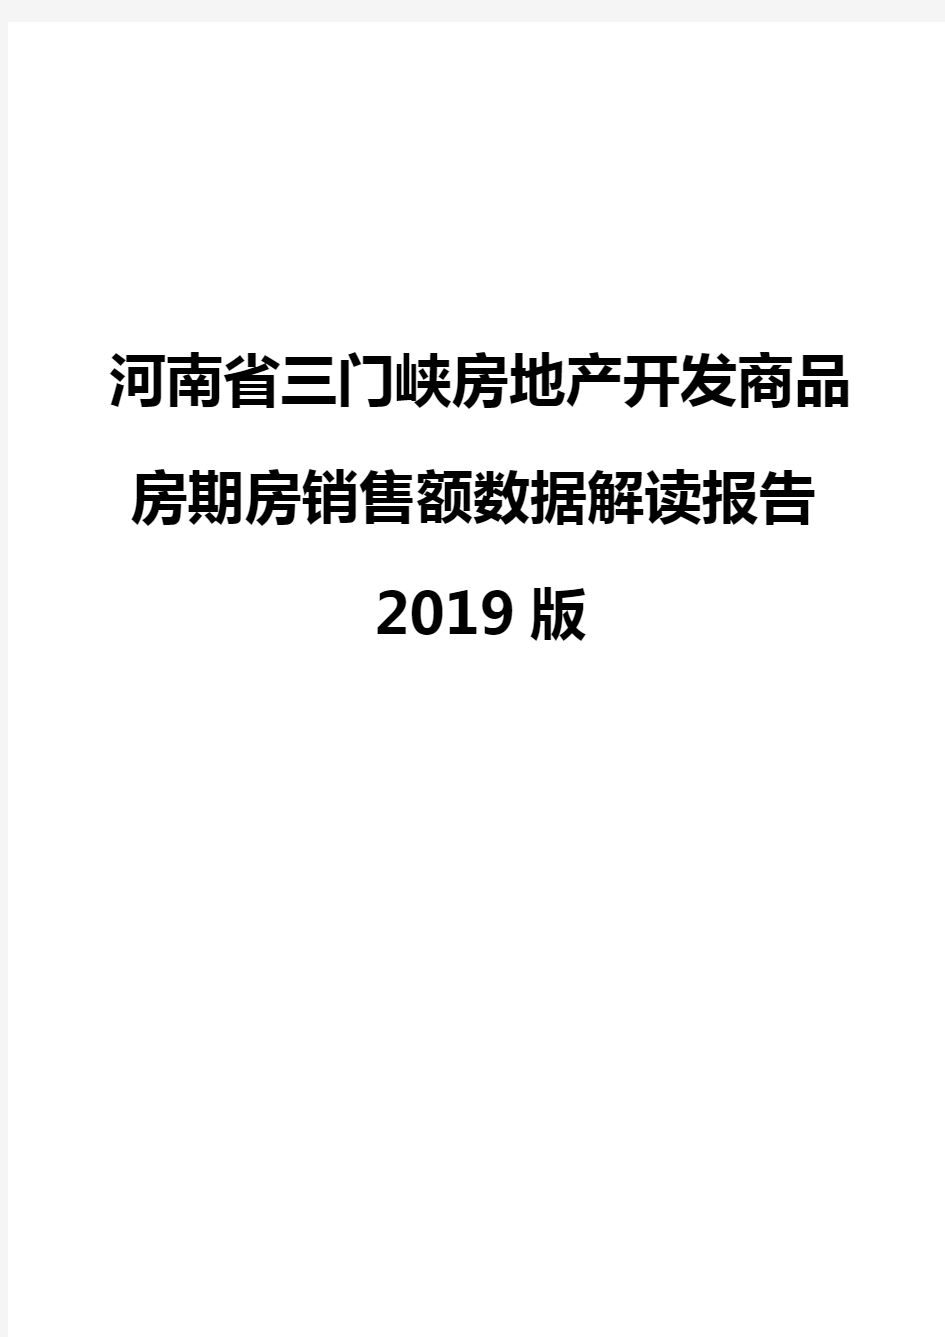 河南省三门峡房地产开发商品房期房销售额数据解读报告2019版